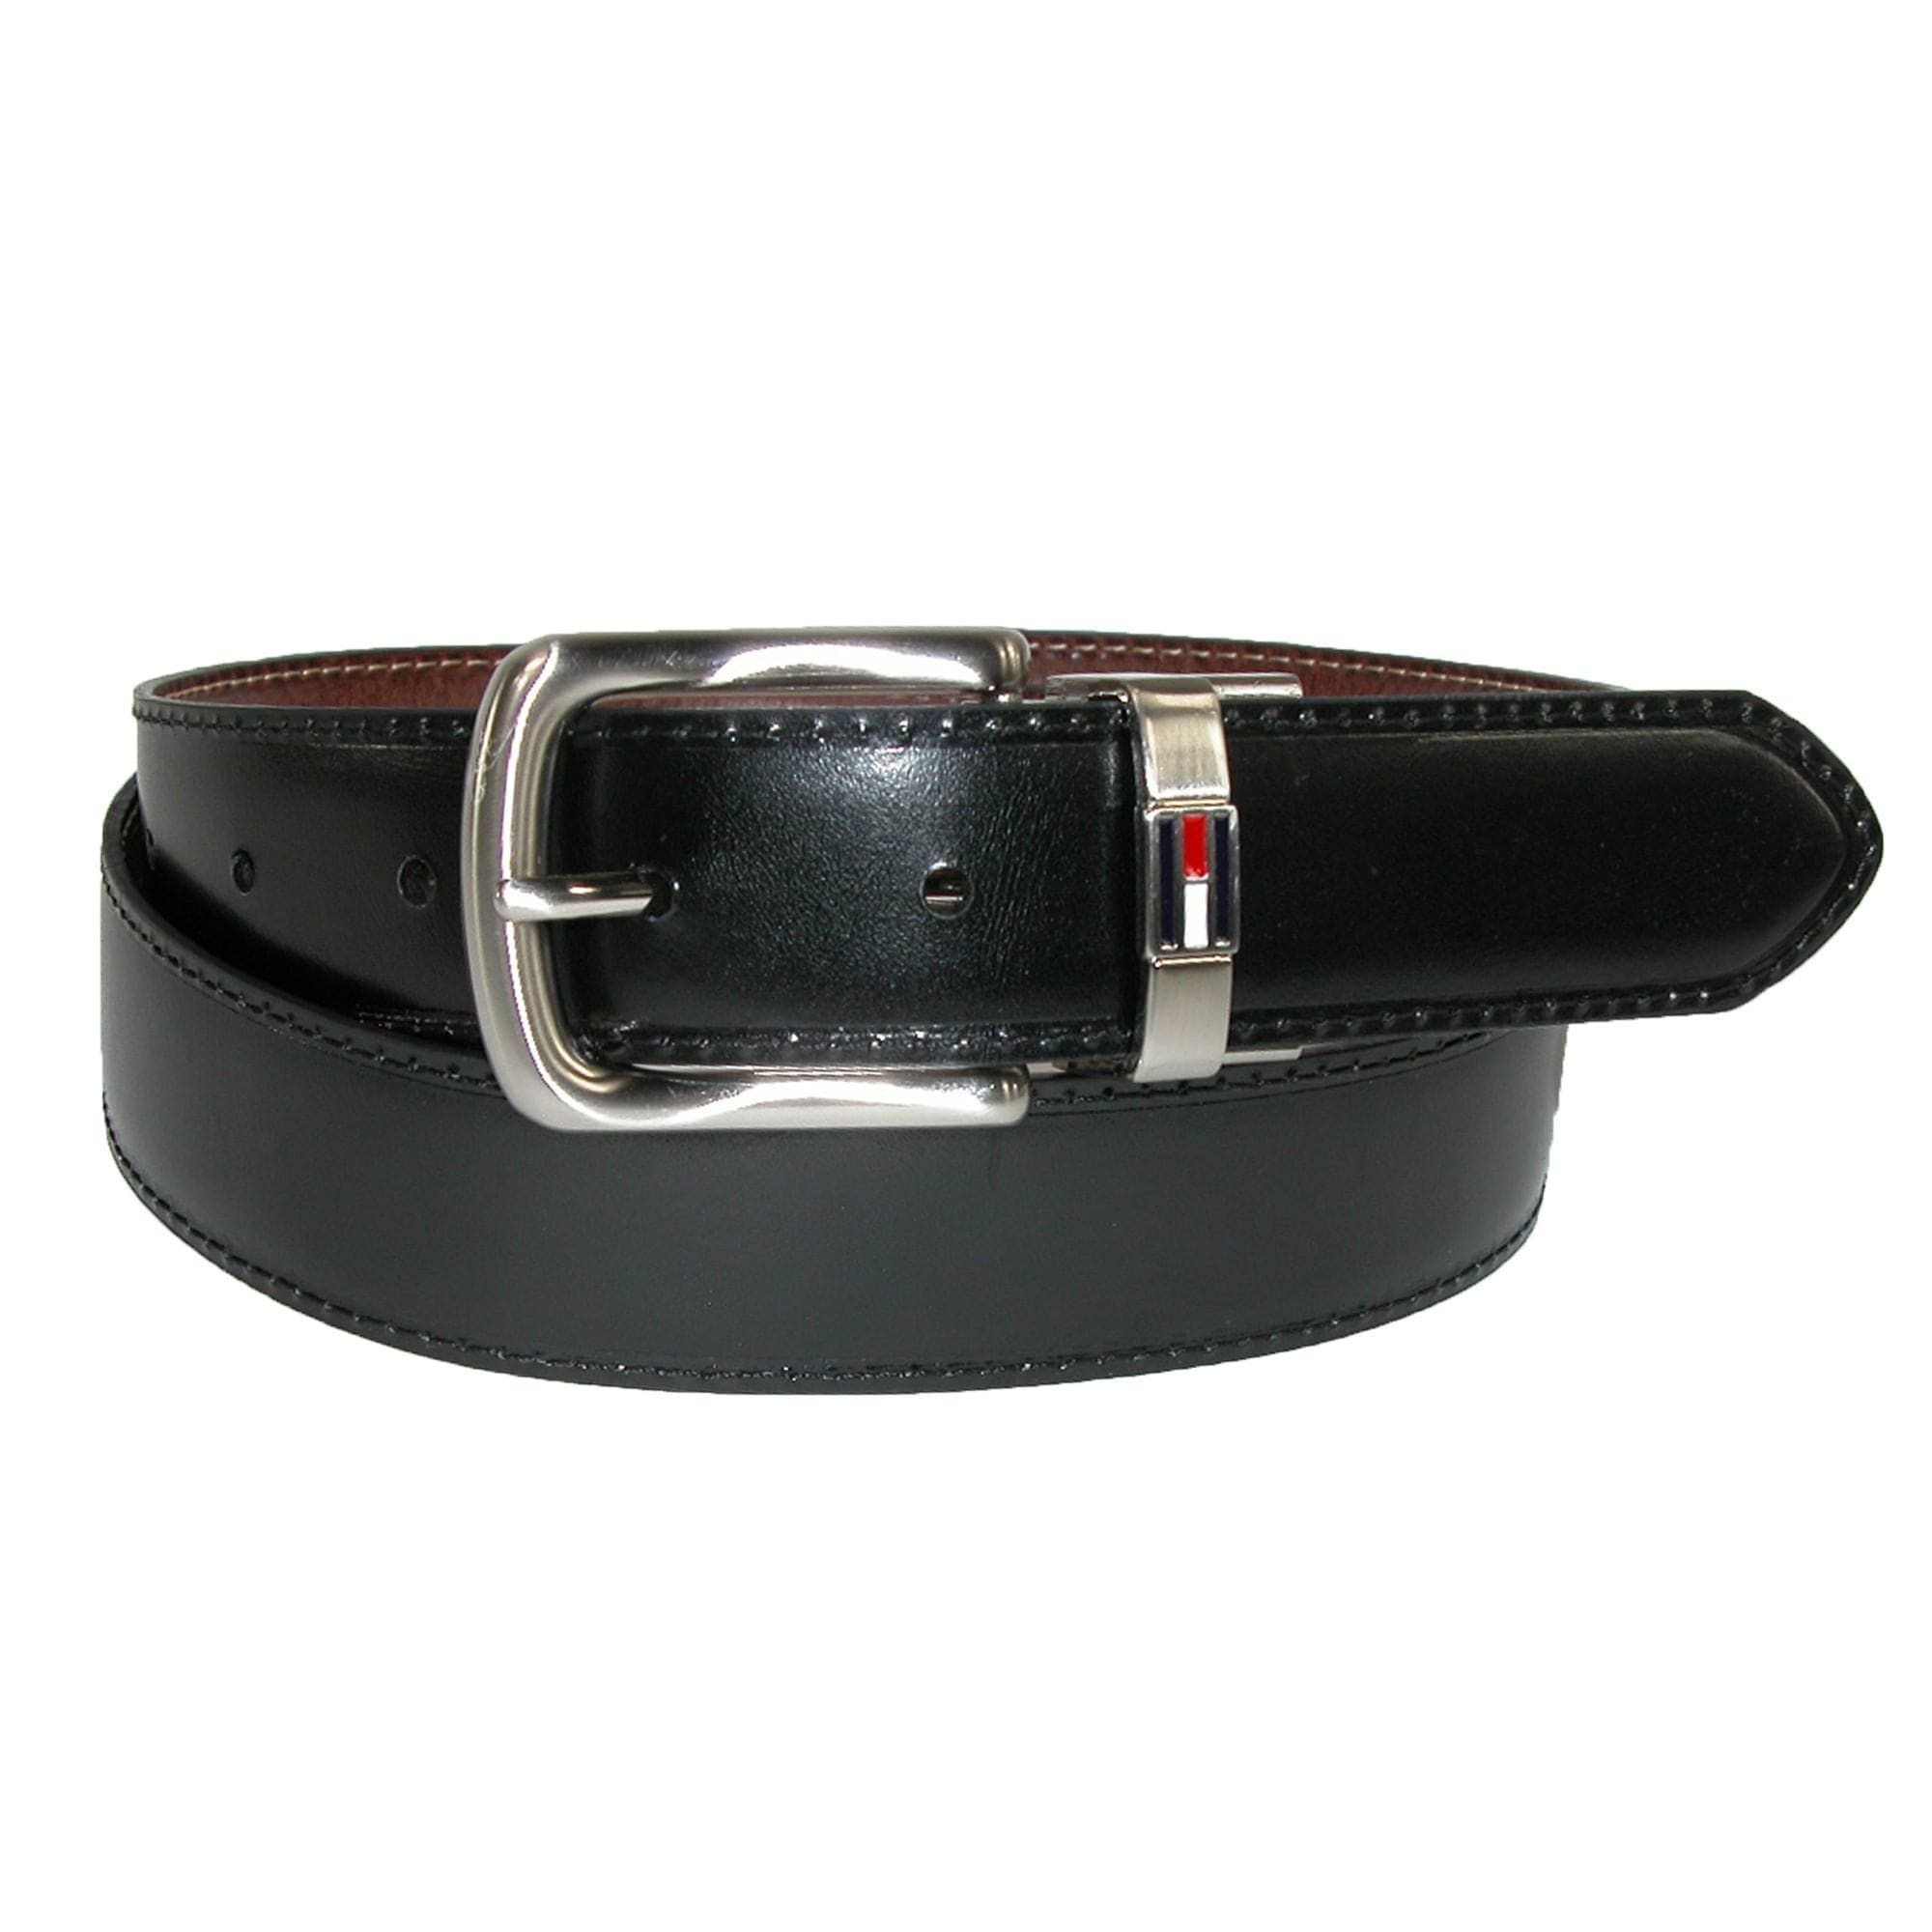 Hilfiger Men's Leather Belt with Logo